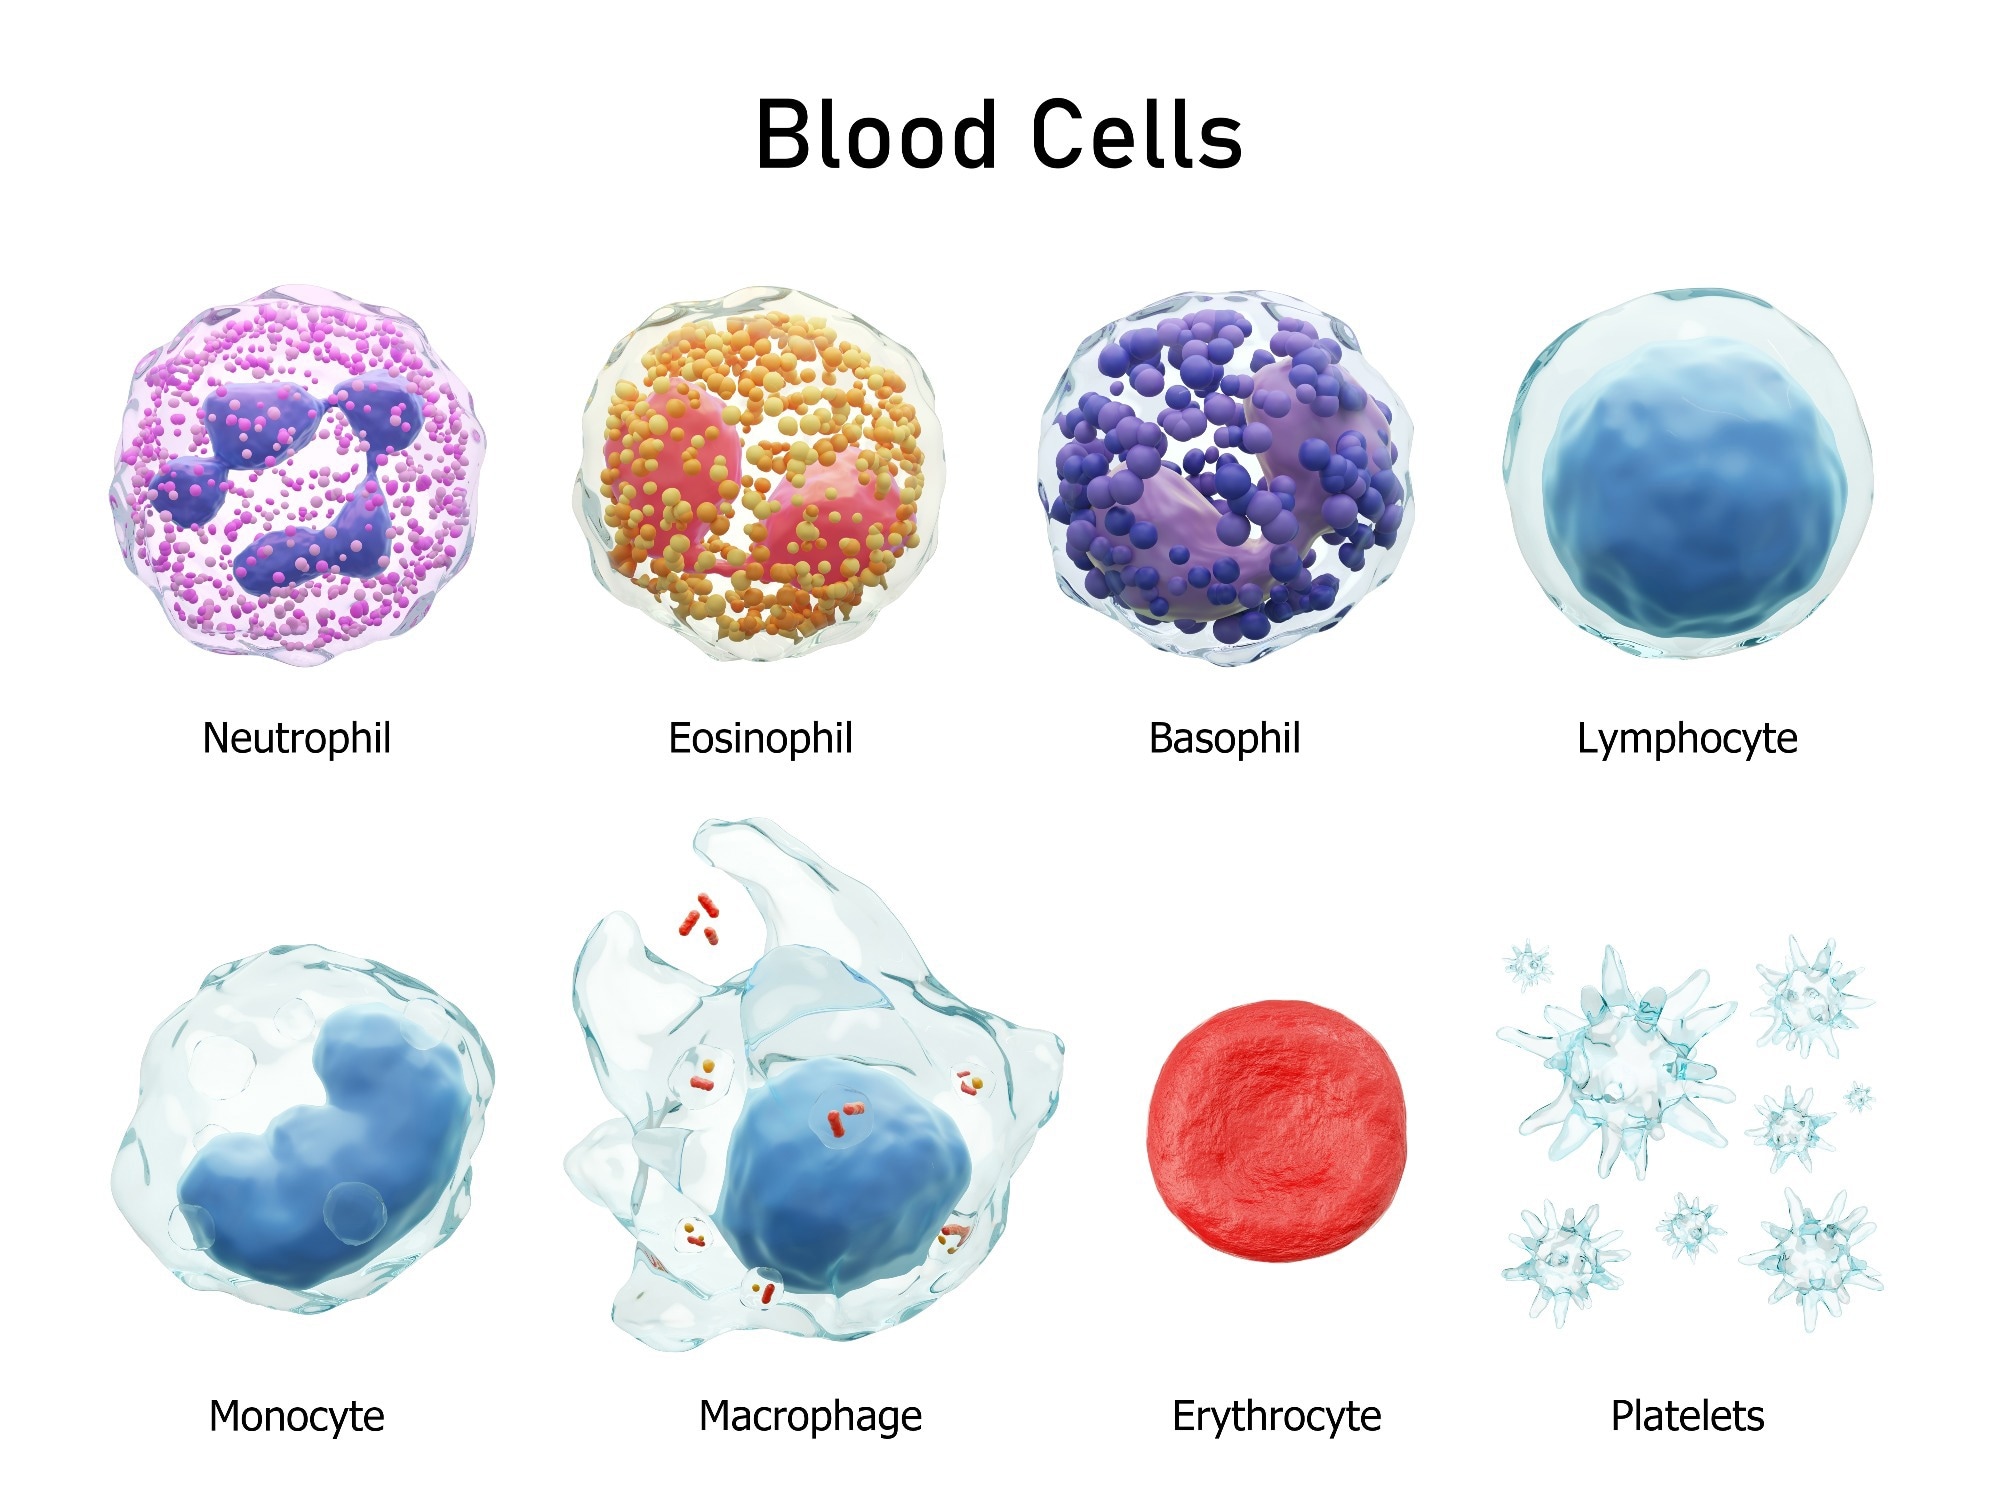 Blood cells. Image Credit: Puwadol Jaturawutthichai / Shutterstock